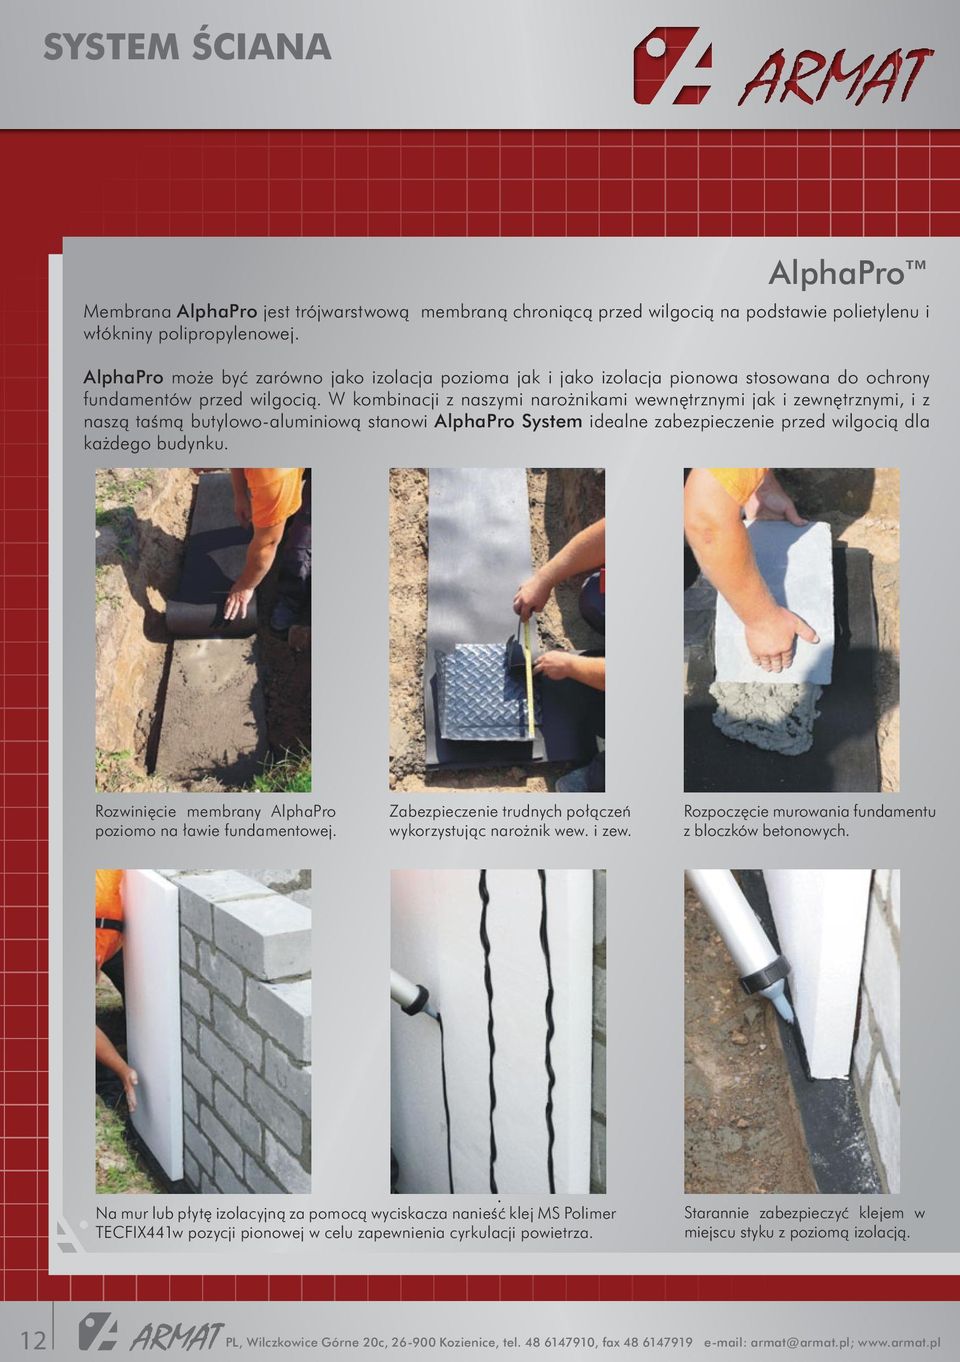 W kombinacji z naszymi narożnikami wewnętrznymi jak i zewnętrznymi, i z naszą taśmą butylowo-aluminiową stanowi AlphaPro System idealne zabezpieczenie przed wilgocią dla każdego budynku.